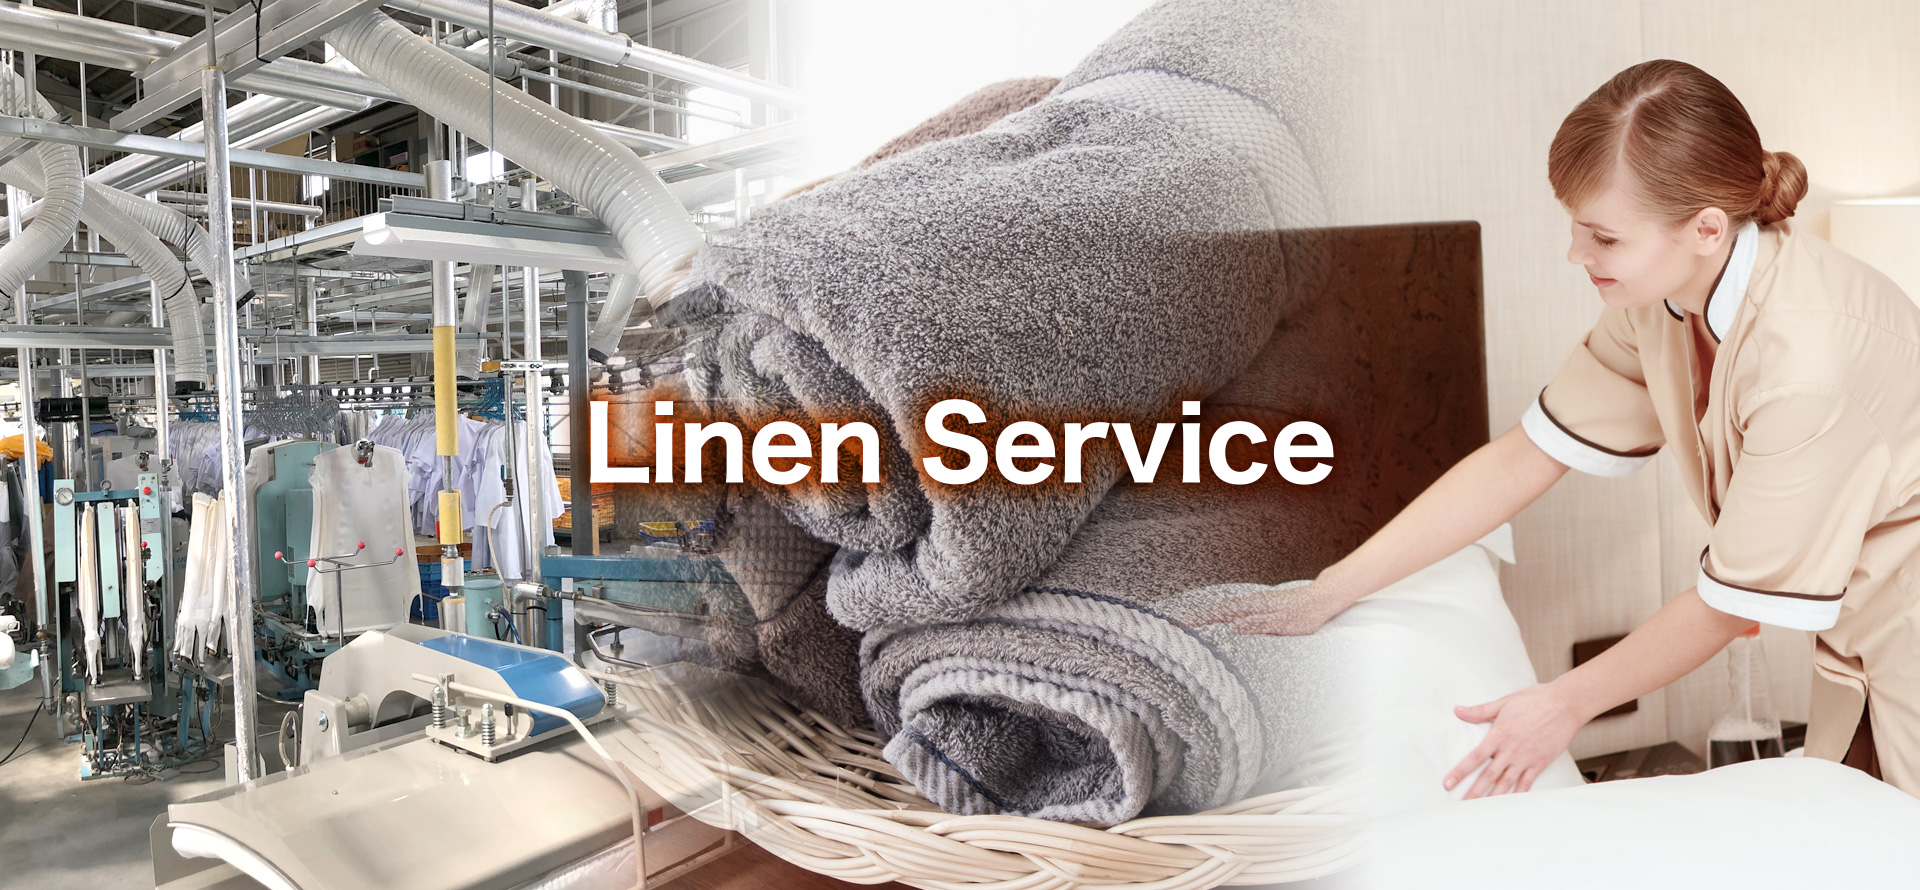 Linen Service